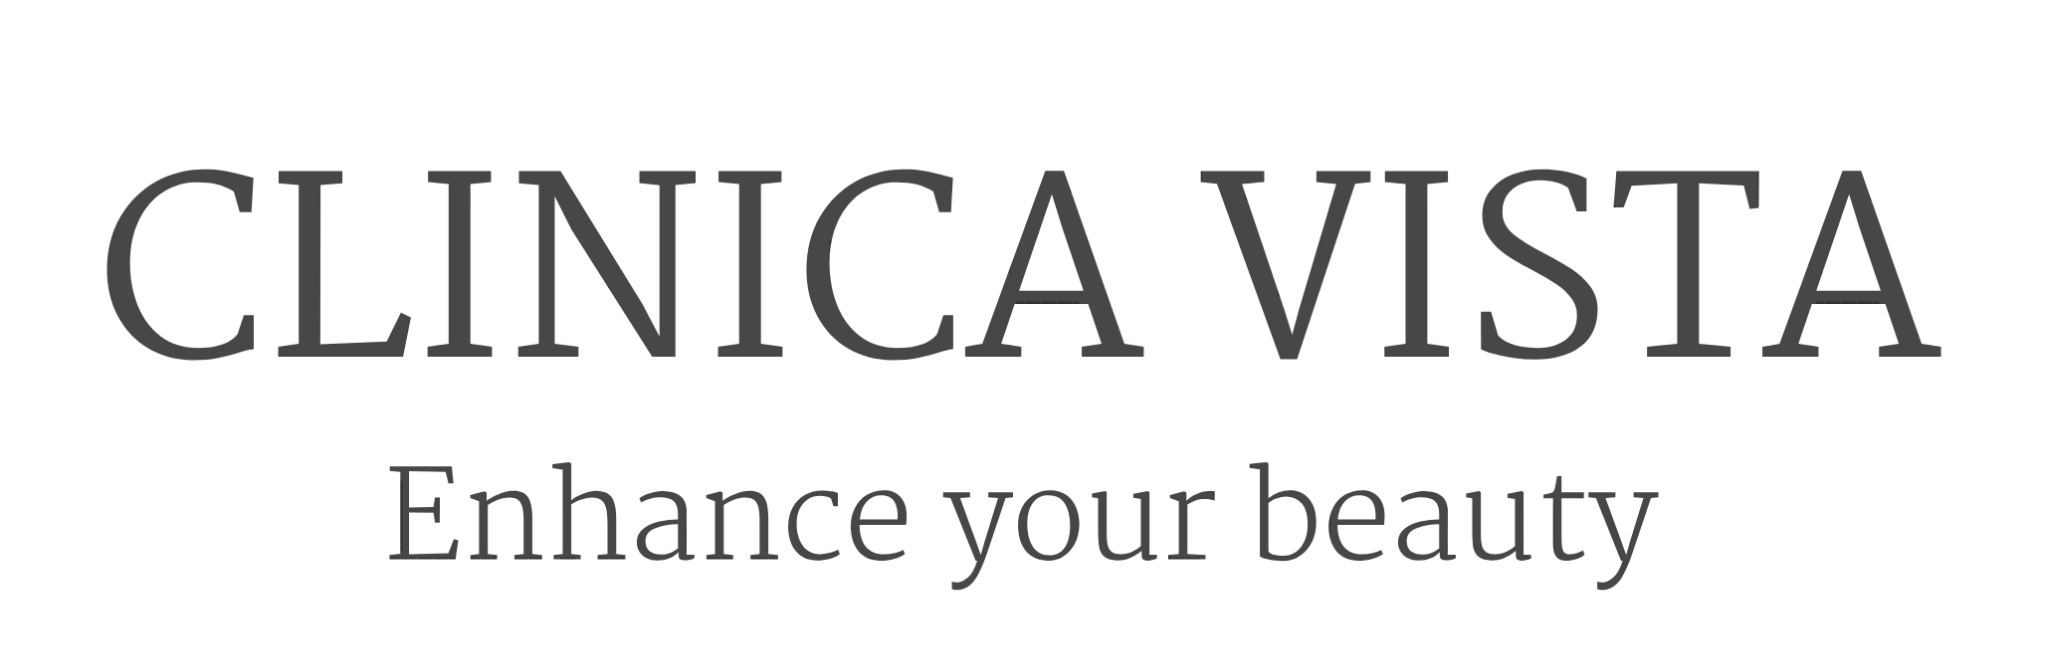 Logo Clinica vista